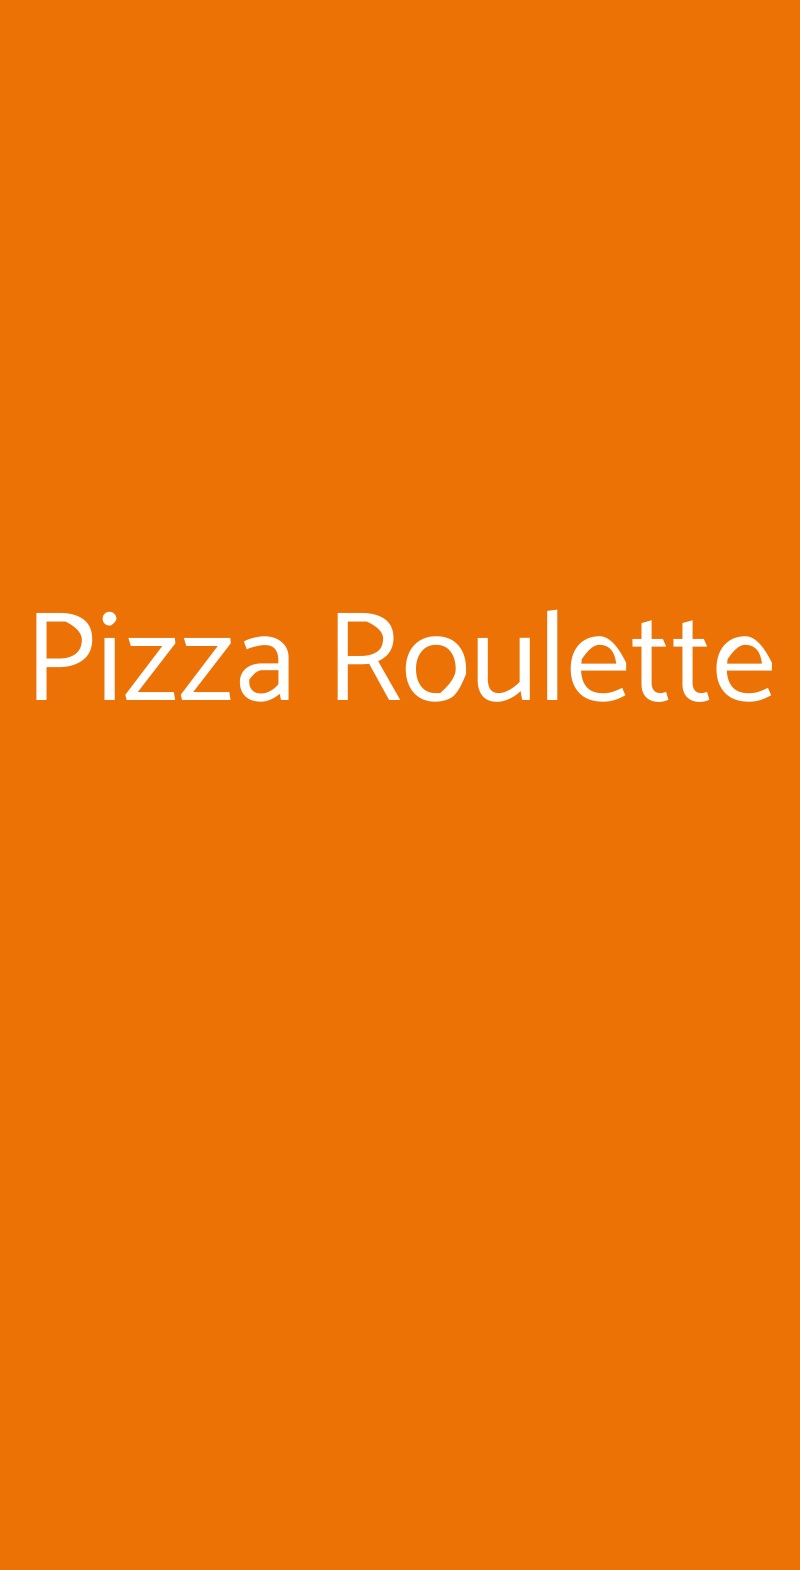 Pizza Roulette Rozzano menù 1 pagina